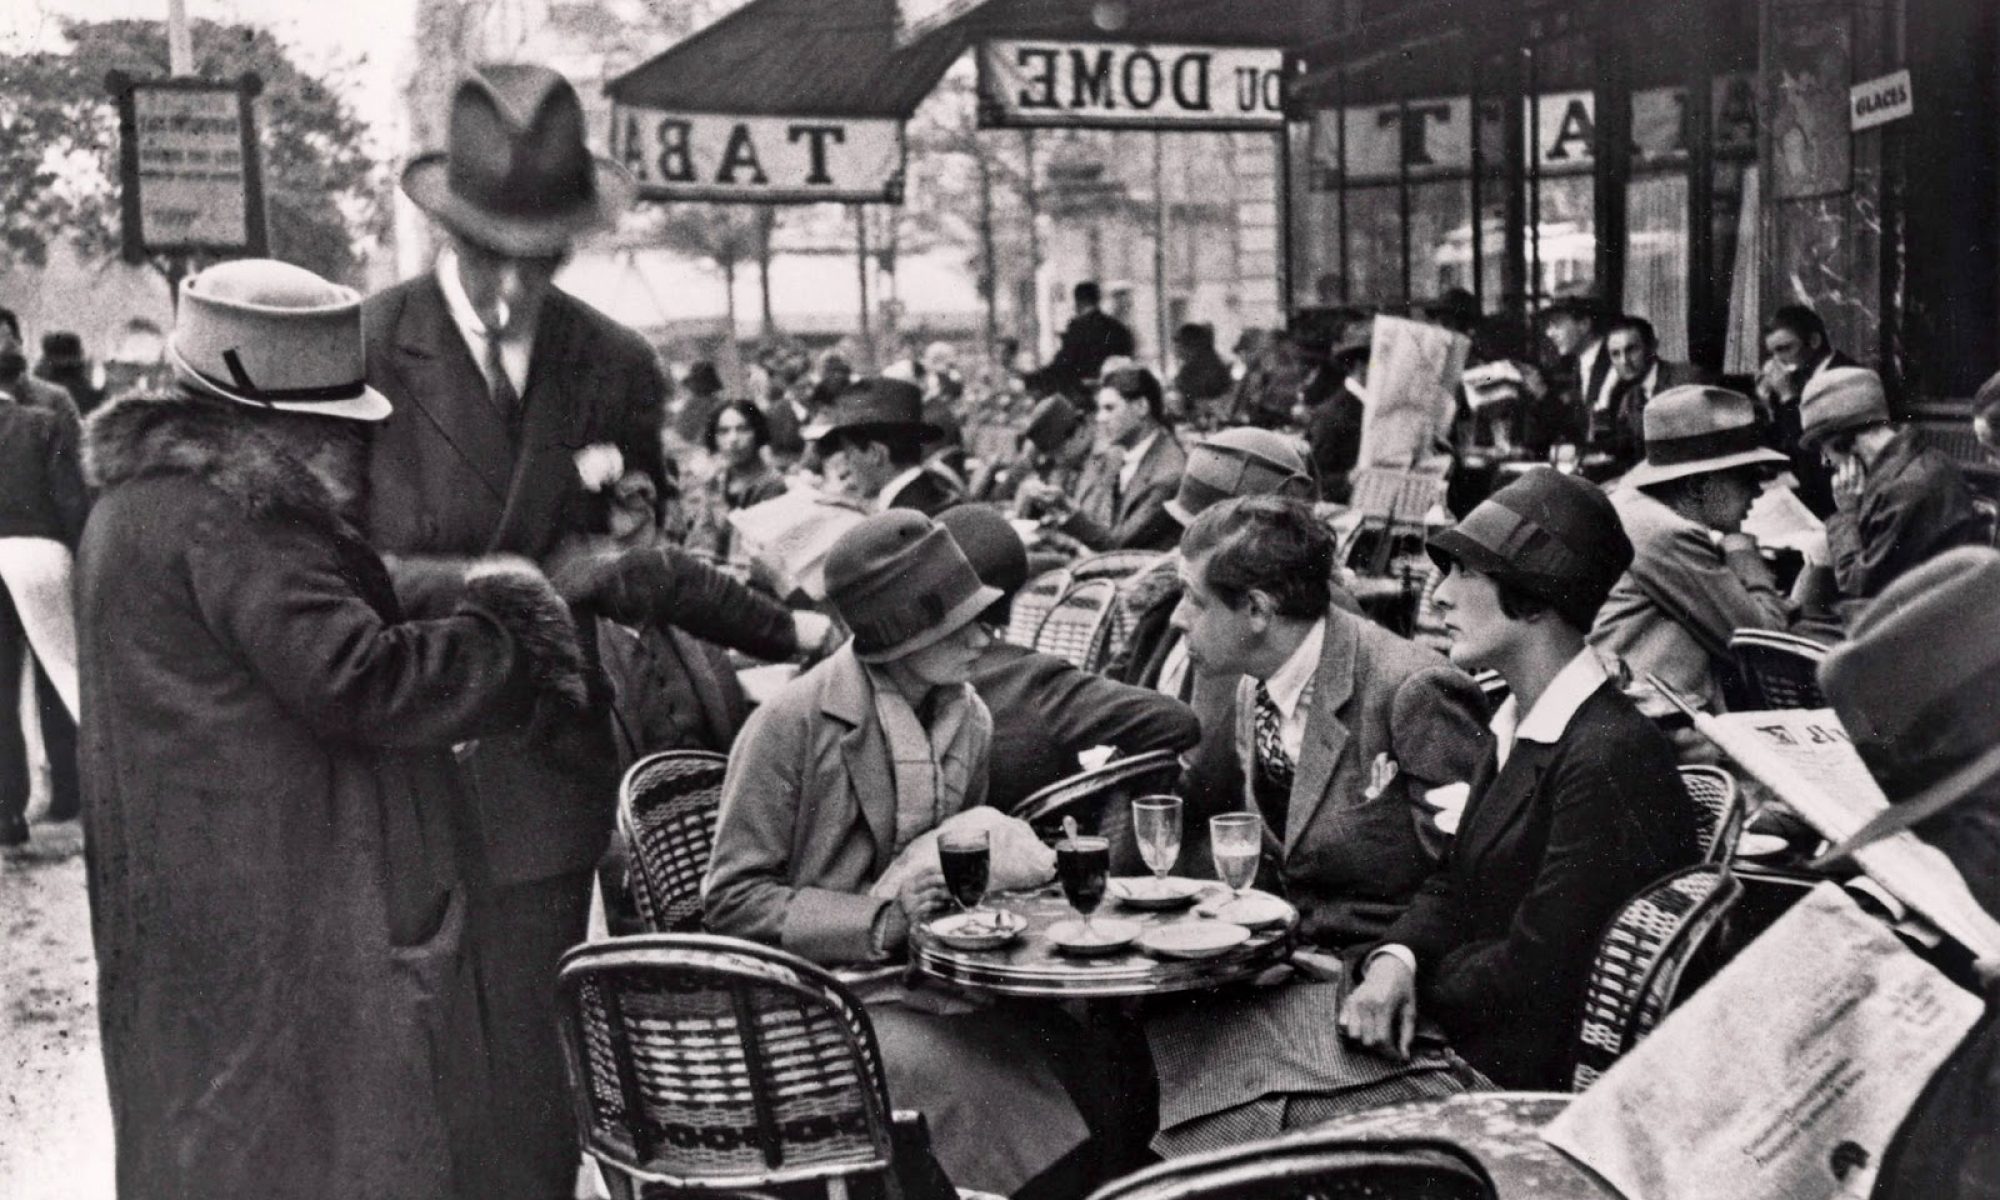 Люди 1920 х годов вопреки утопии. Париж 1930-е годы. Le Dome кафе Париж. Париж в 30-е годы. Кафе Парижа в 30-е годы.